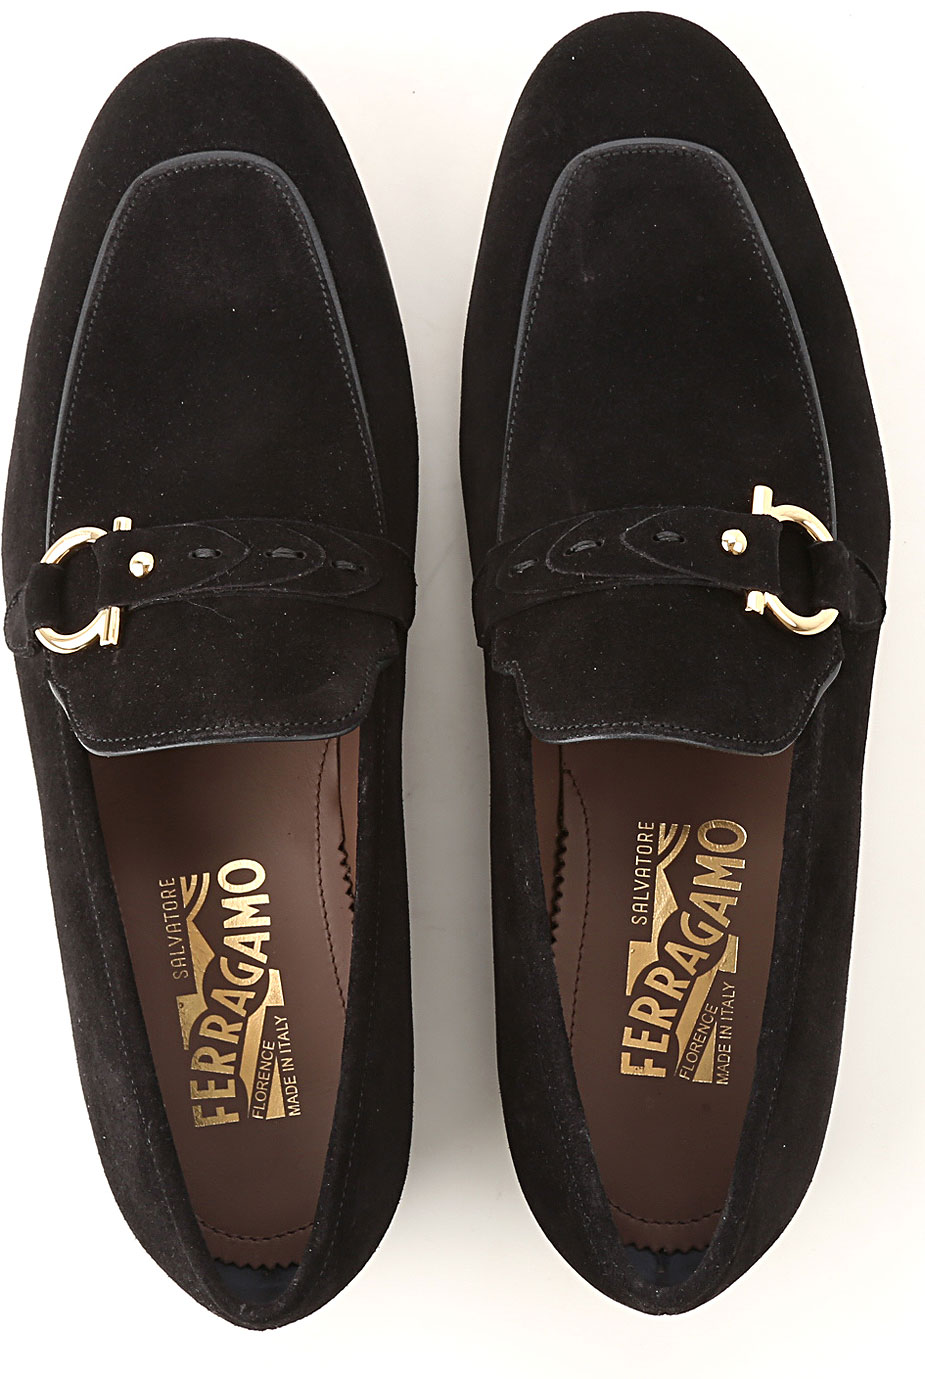 Mens Shoes Salvatore Ferragamo, Style code: 708136-alessio-nero